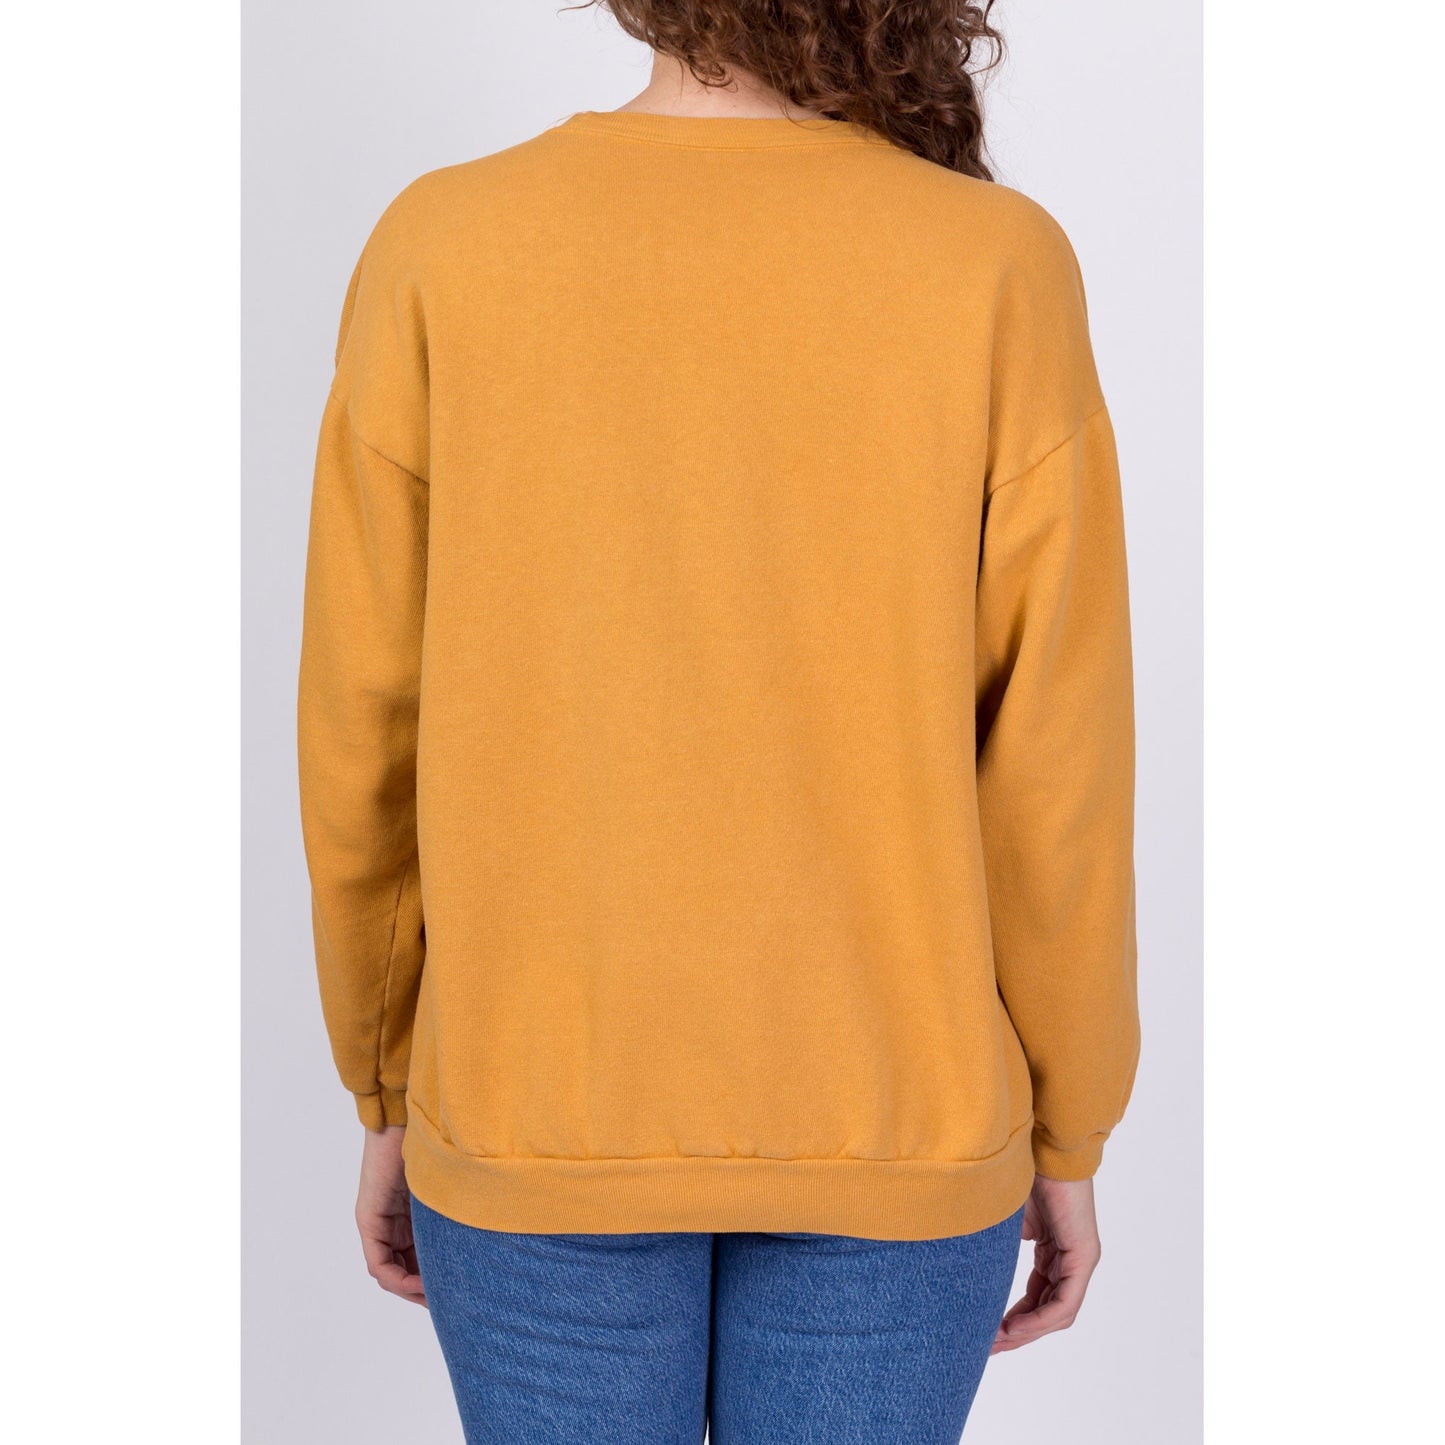 90s Guess USA Mustard Yellow Sweatshirt - One Size 